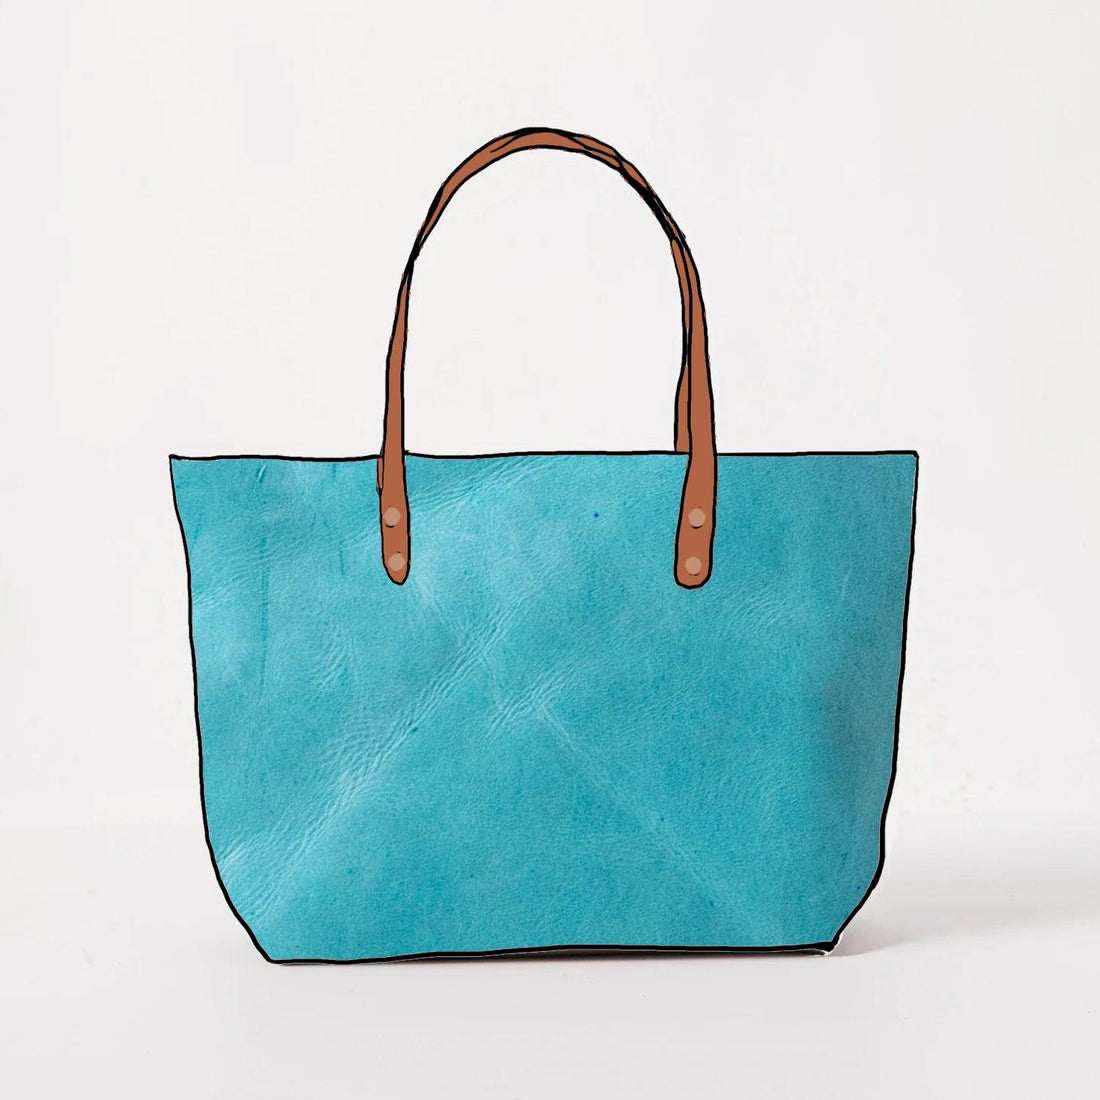 Wholesale Cro Ile Kin Leather Bag,1 Piece